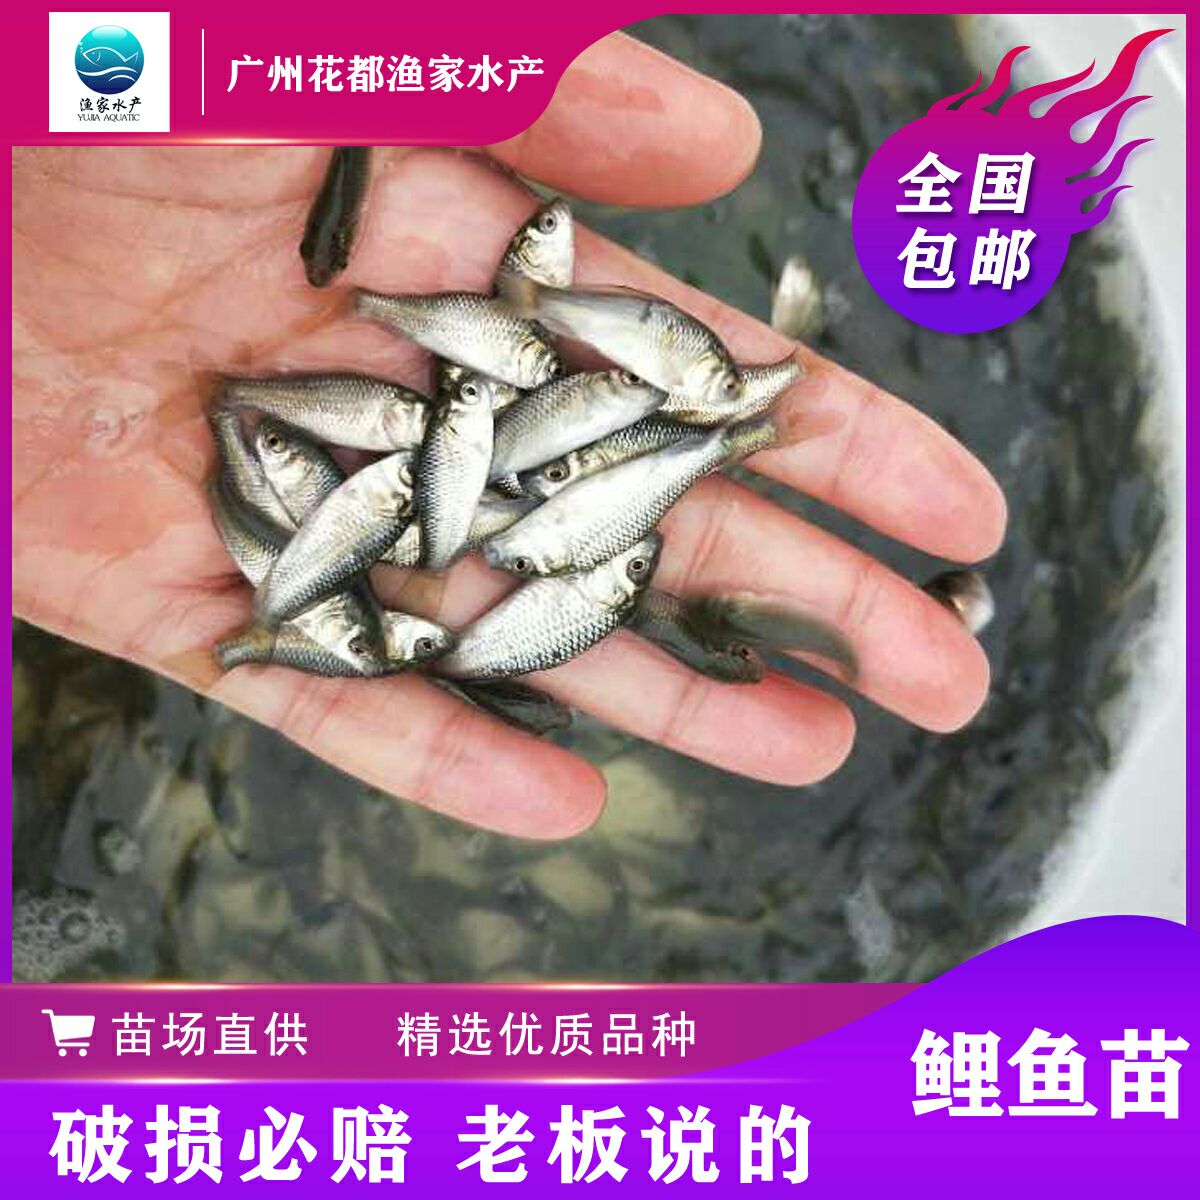 廣州鯉魚苗 百萬現貨 放生魚苗 (低價出售)建鯉魚苗 淡水魚苗